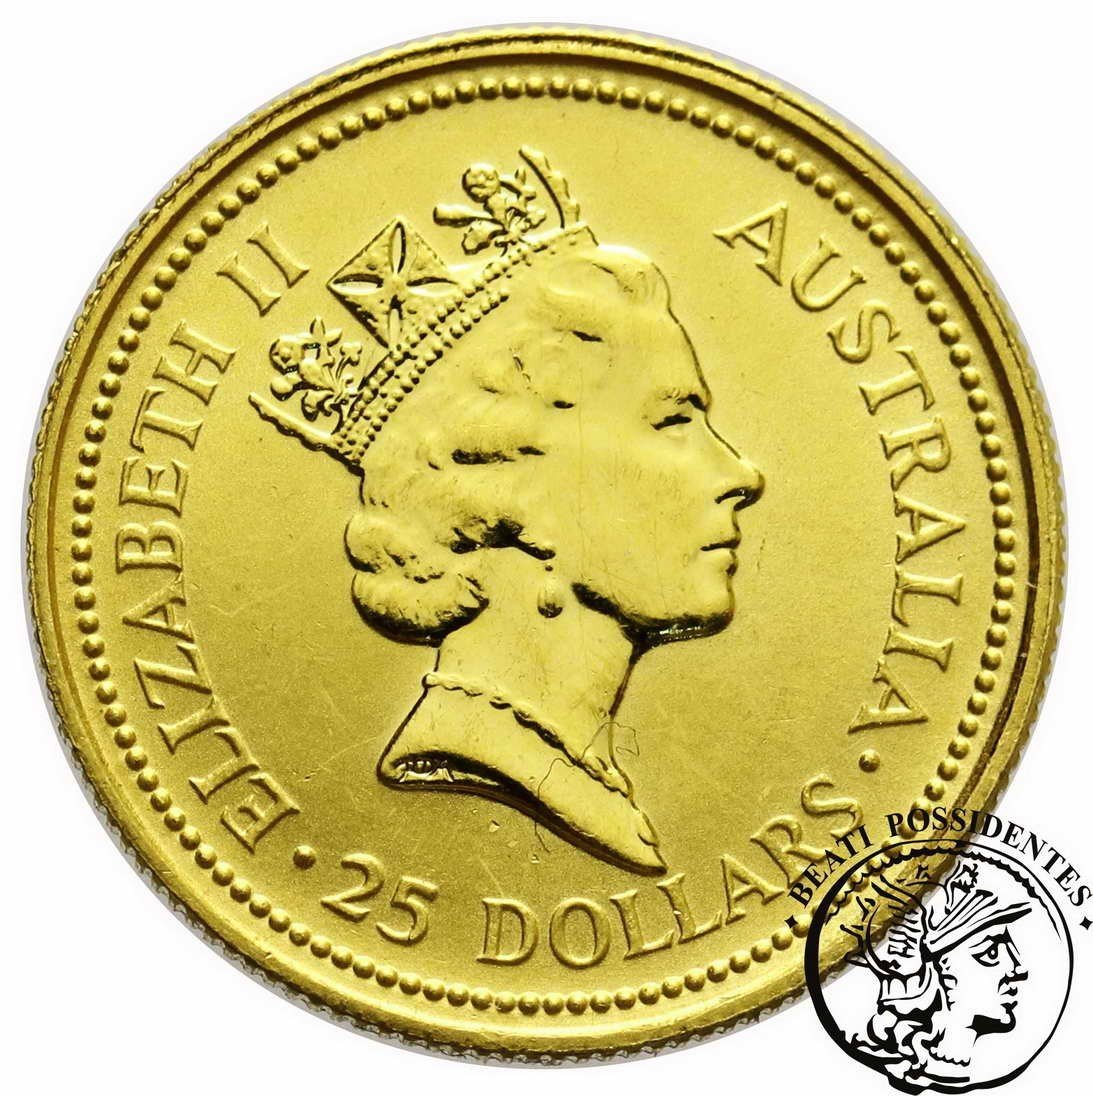 Australia 25 $ dolarów 1993 1/4 Oz Au 999,9 st. L